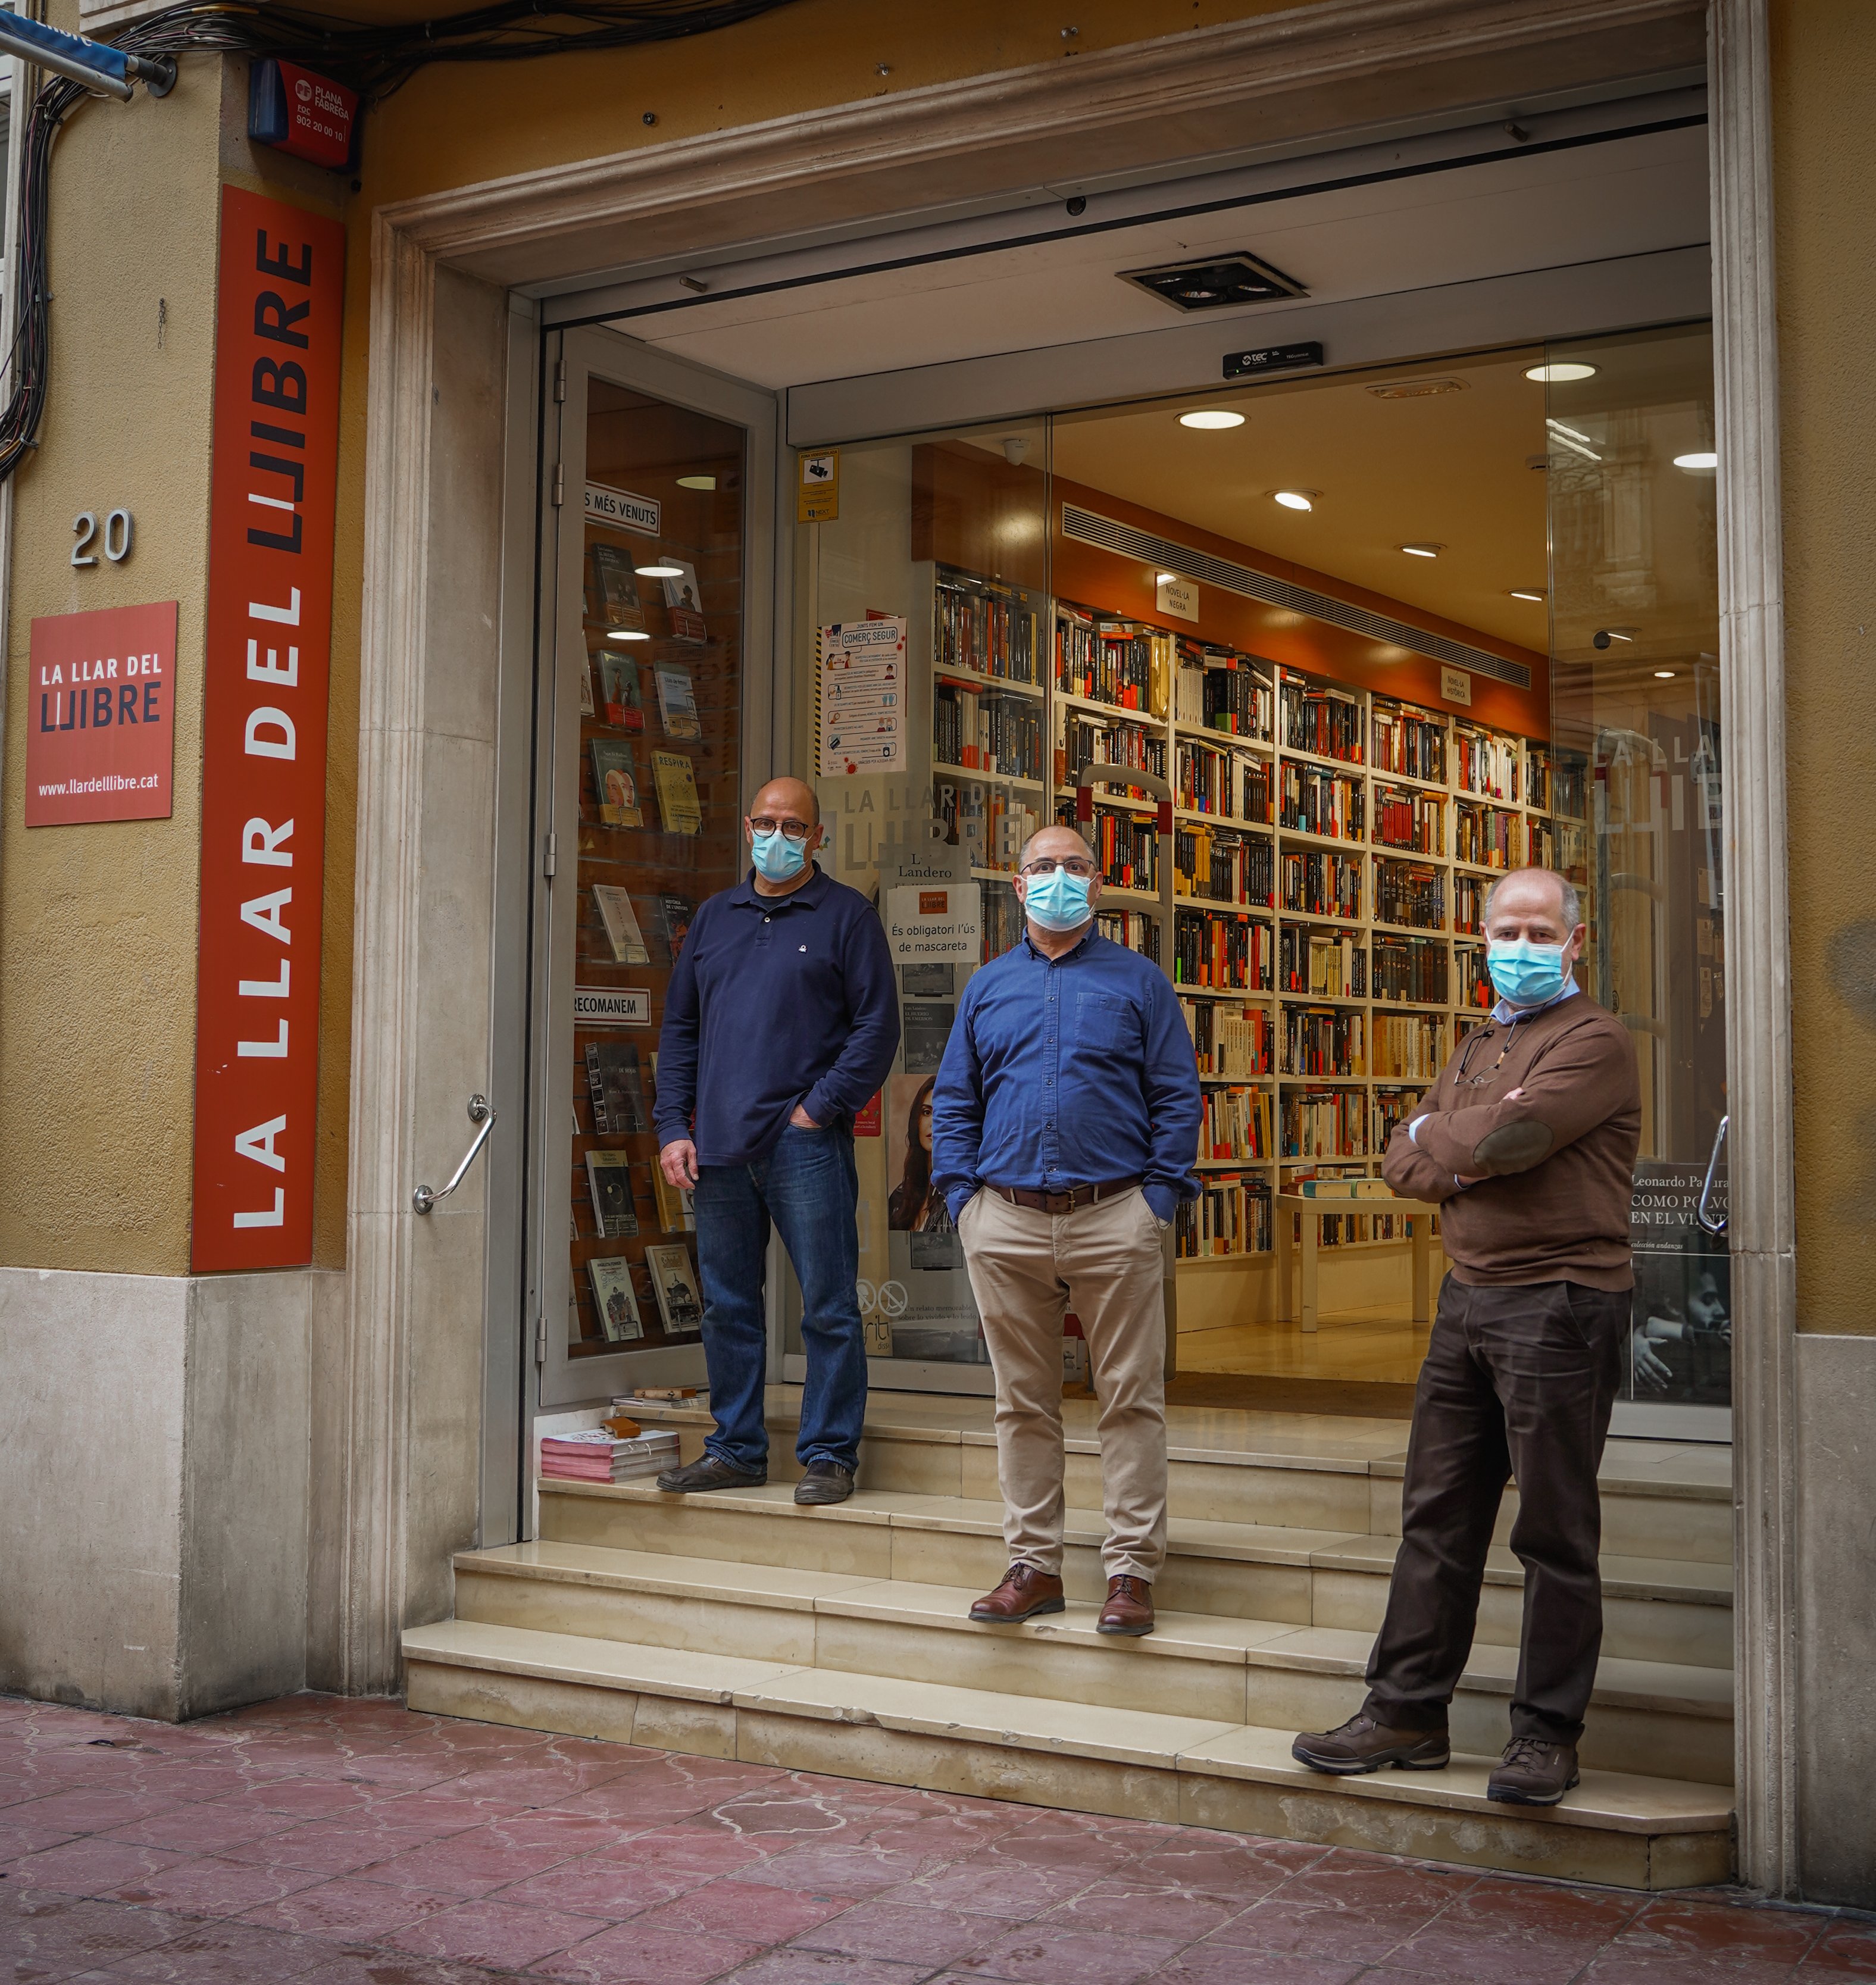 Si fossis un llibre, tu també voldries viure a Sabadell